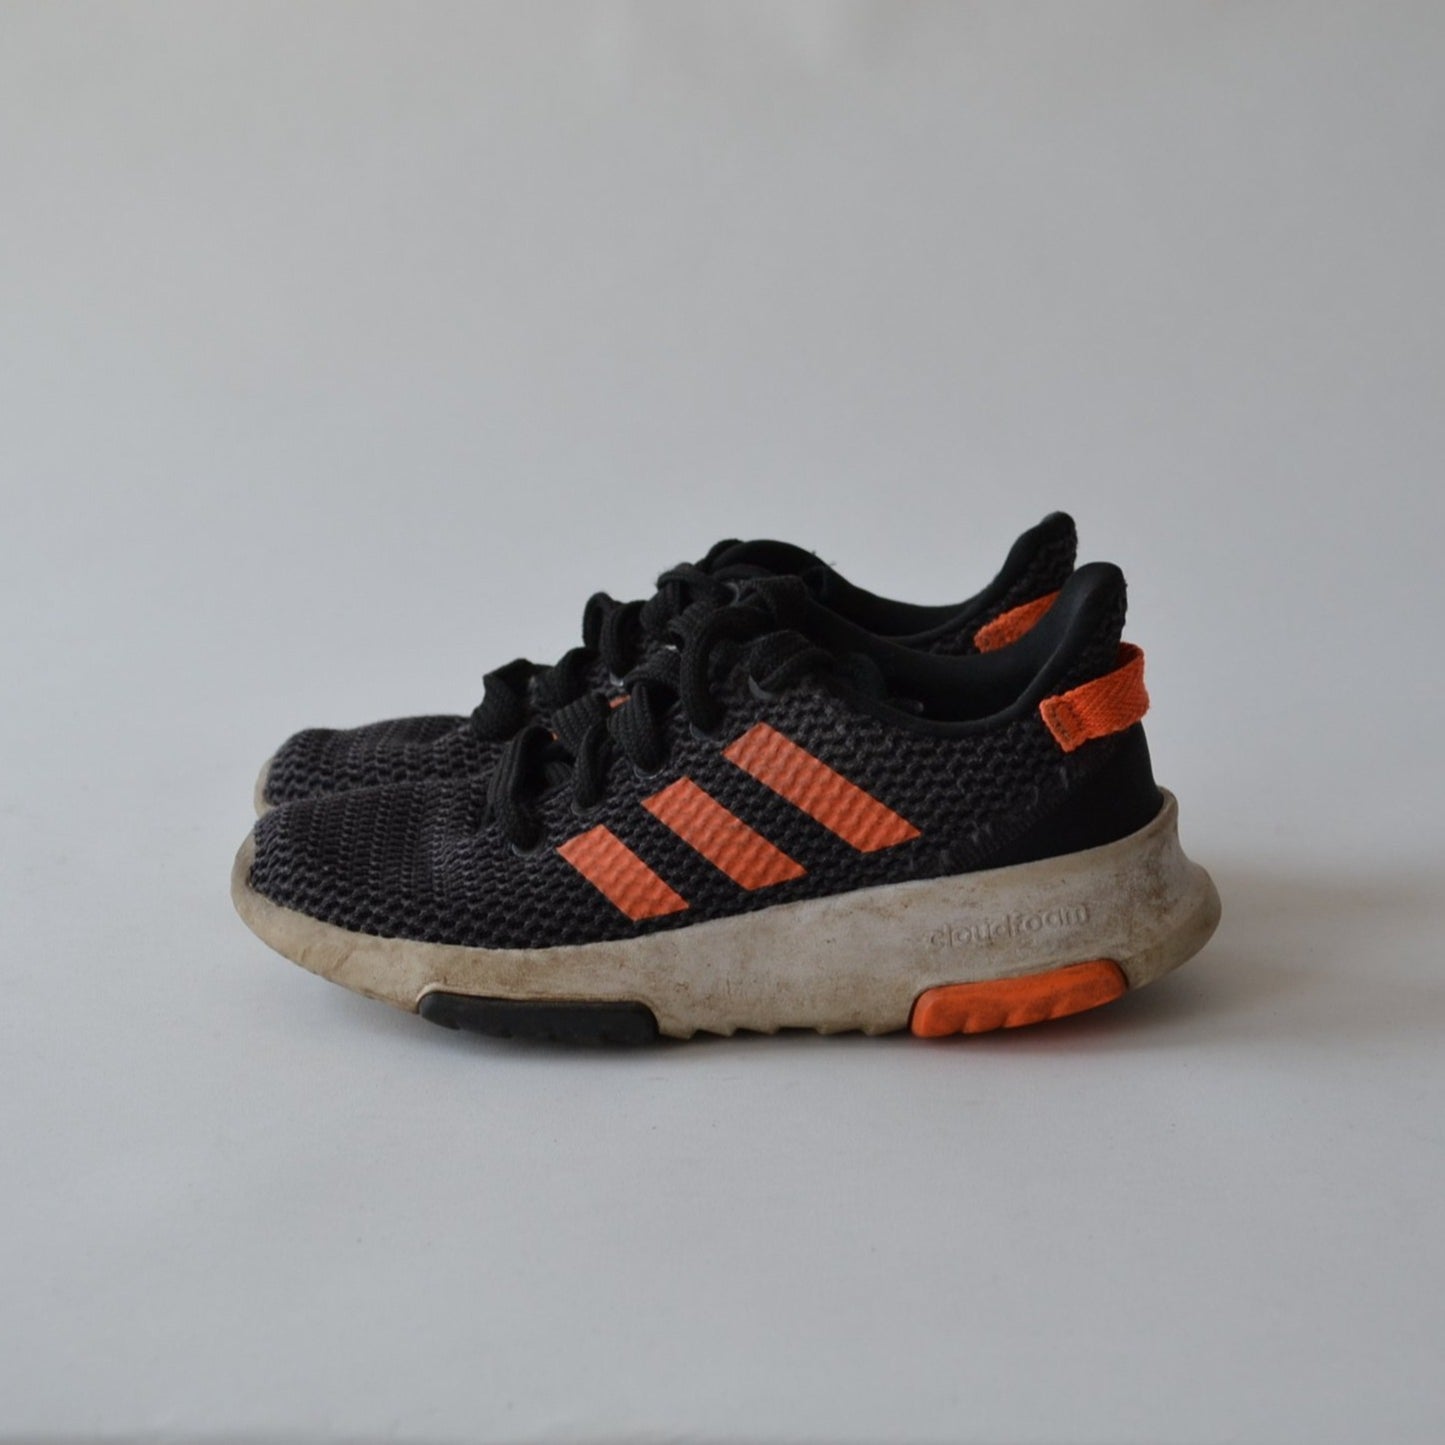 Trainers - Black & Orange - Shoe Size 13 (jr)